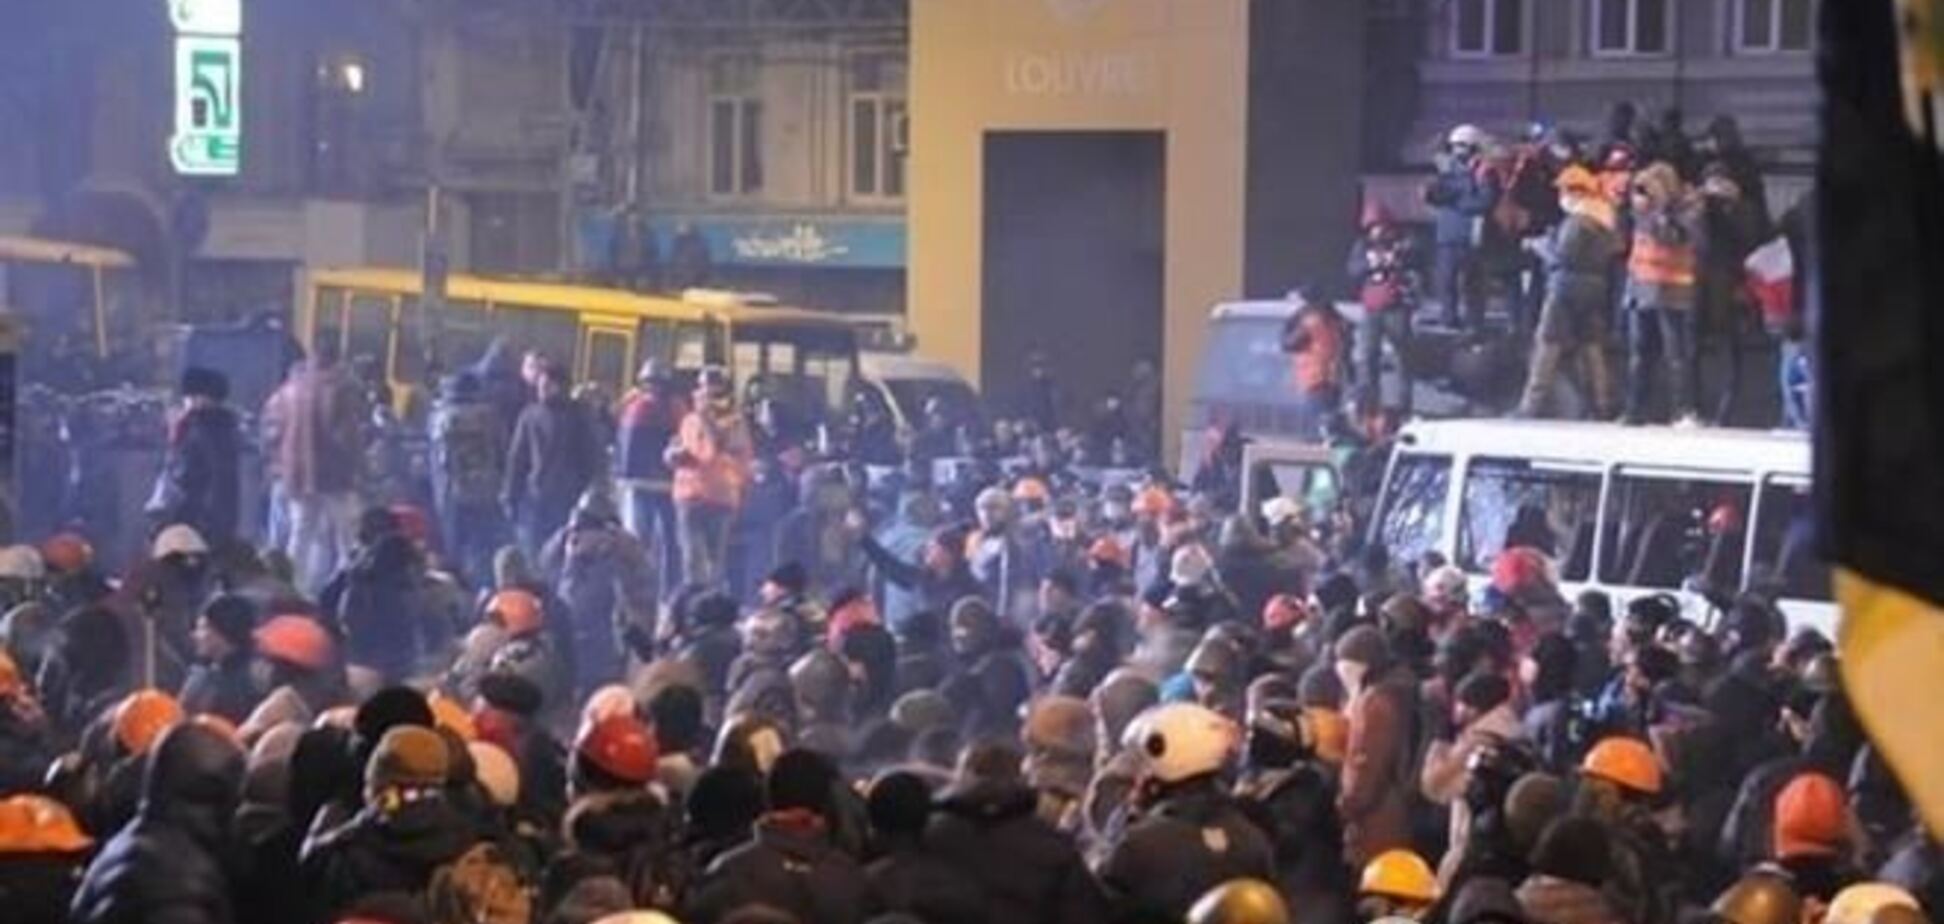 Ущерб от беспорядков в Киеве уже составил $375 тыс. - МВД